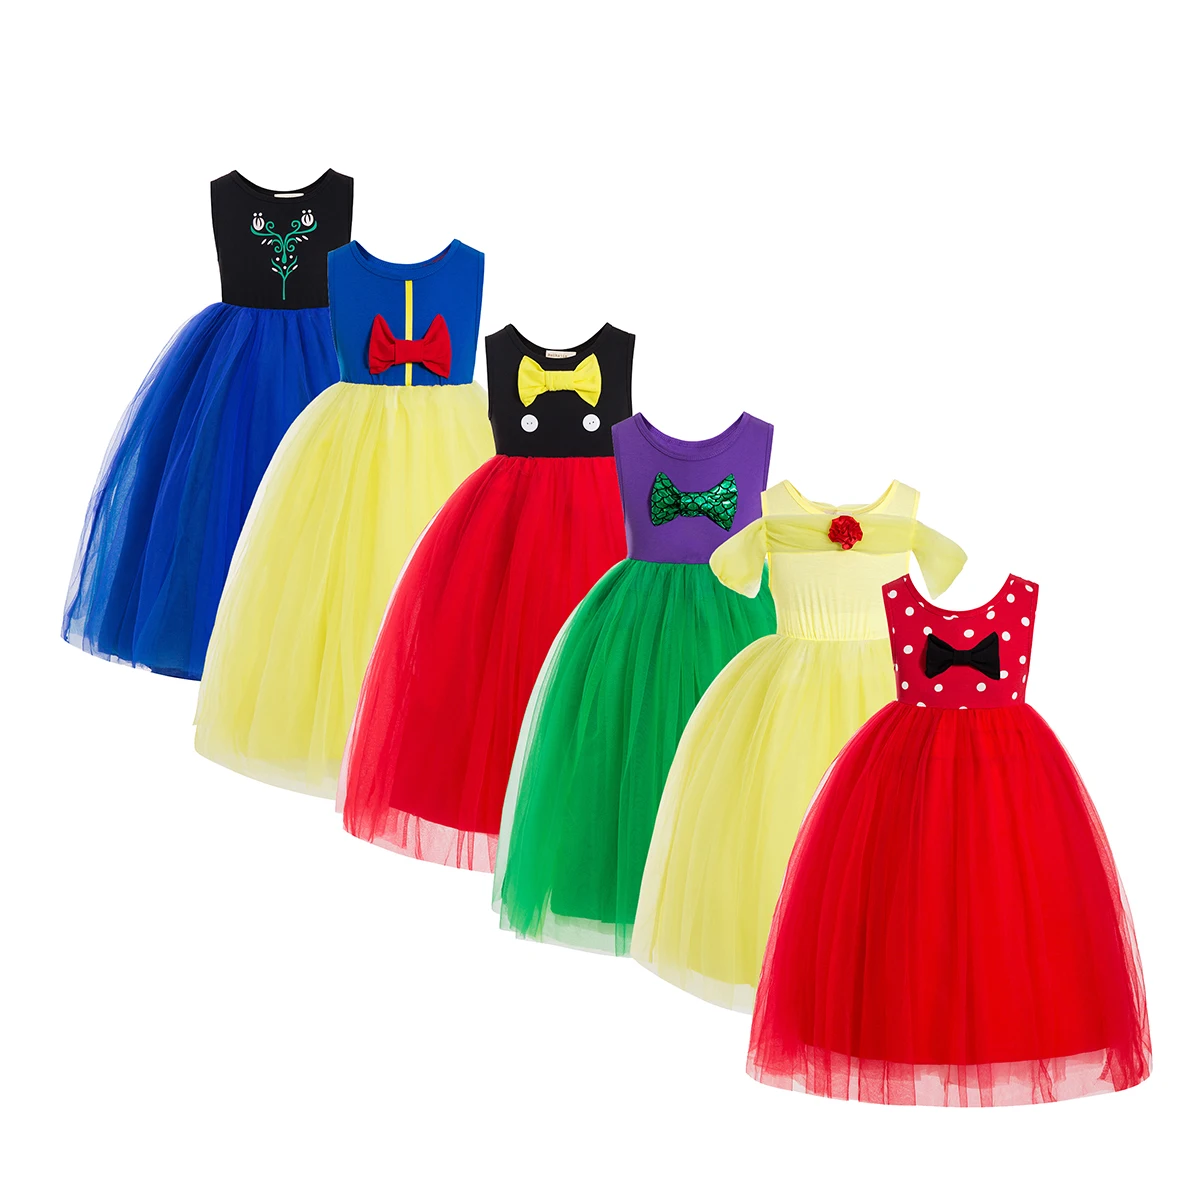 Trendy Buzz LightYear Tutu Dress For Kids